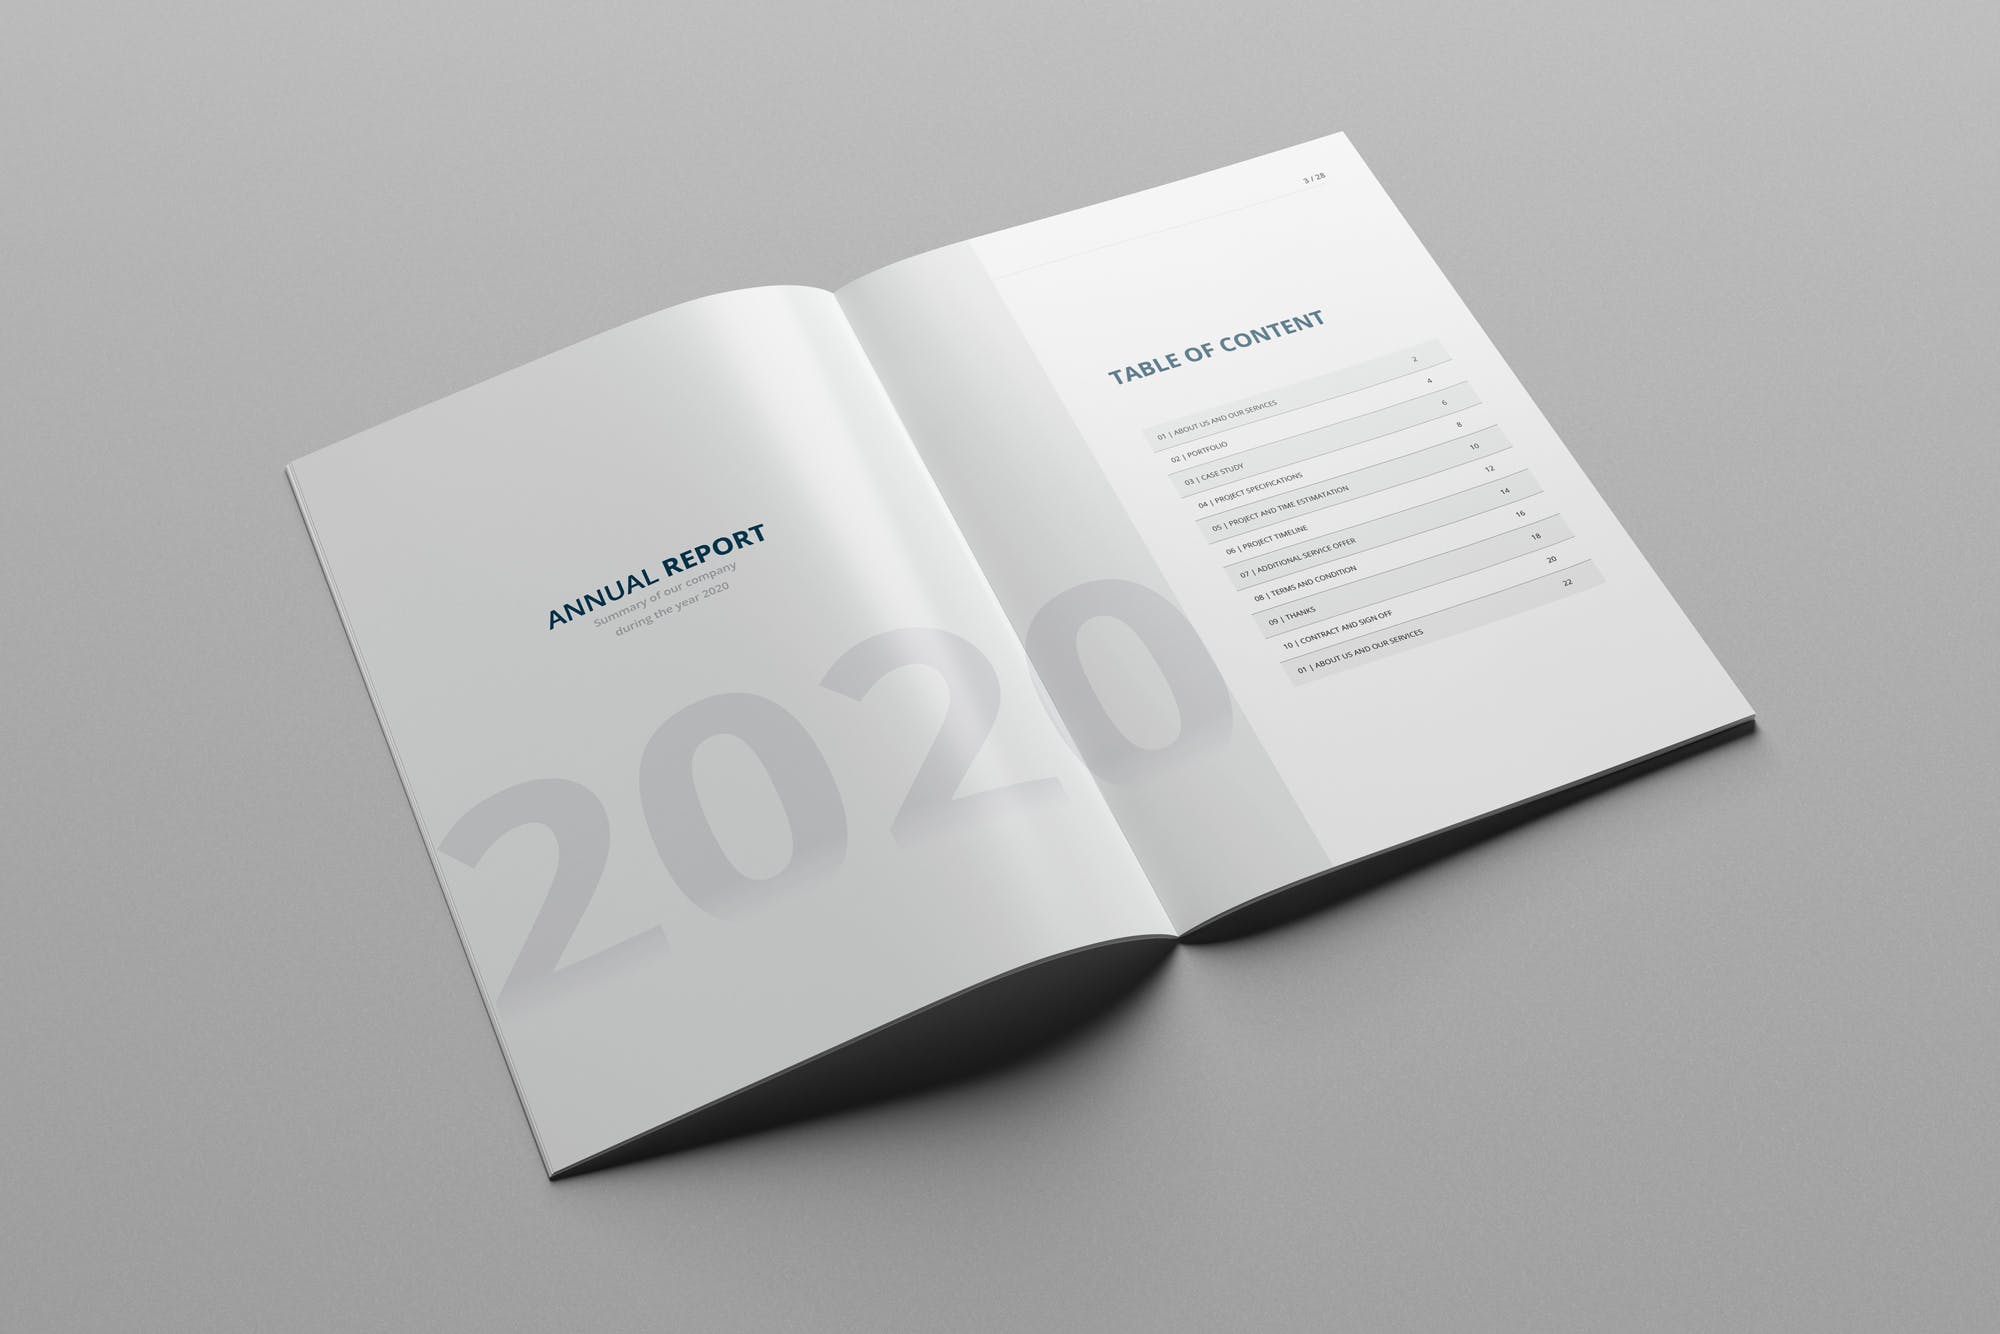 2020年企业年终总结报告设计INDD模板 Annual Report 2020 | 28 Pages插图1